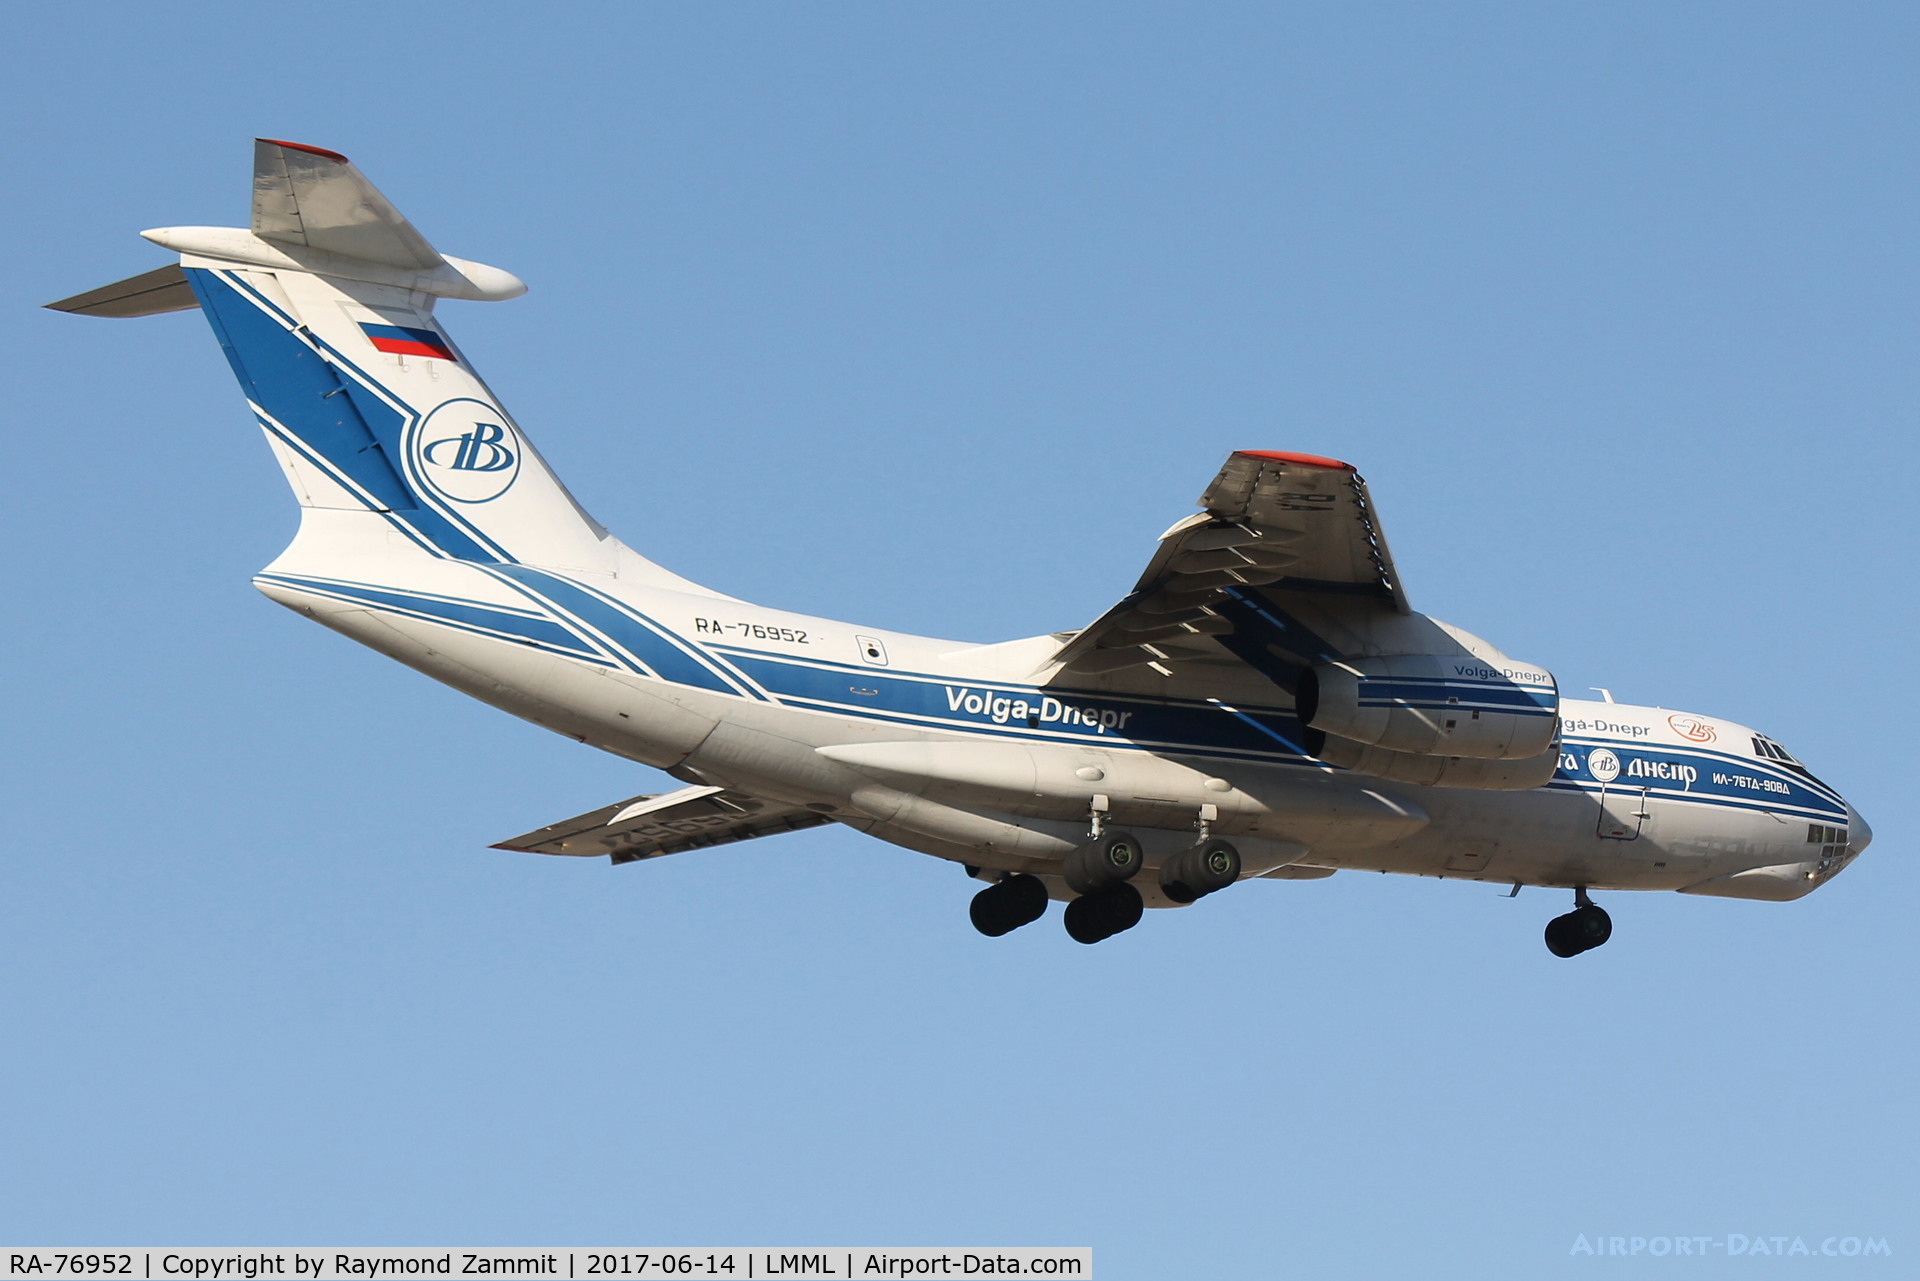 RA-76952, 2010 Ilyushin Il-76TD-90VD C/N 2093422743, Ilyushin IL-76 RA-76952 Volga Dnepr Airlines